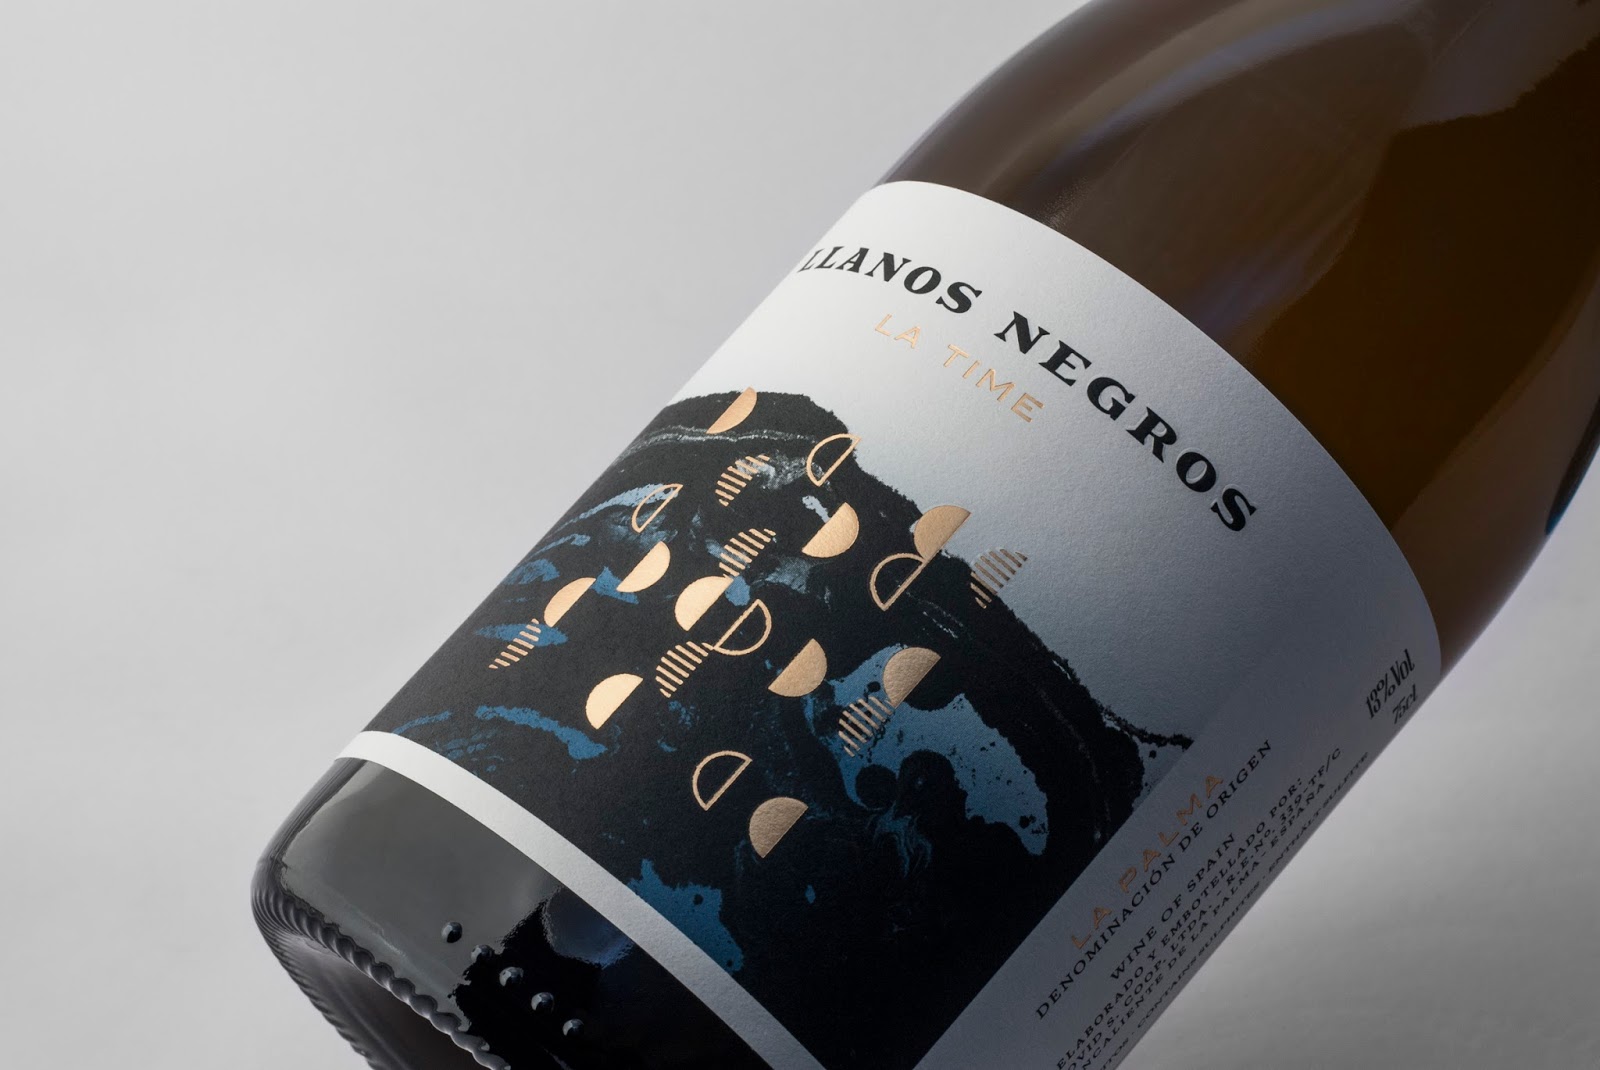 Llanos Negro label